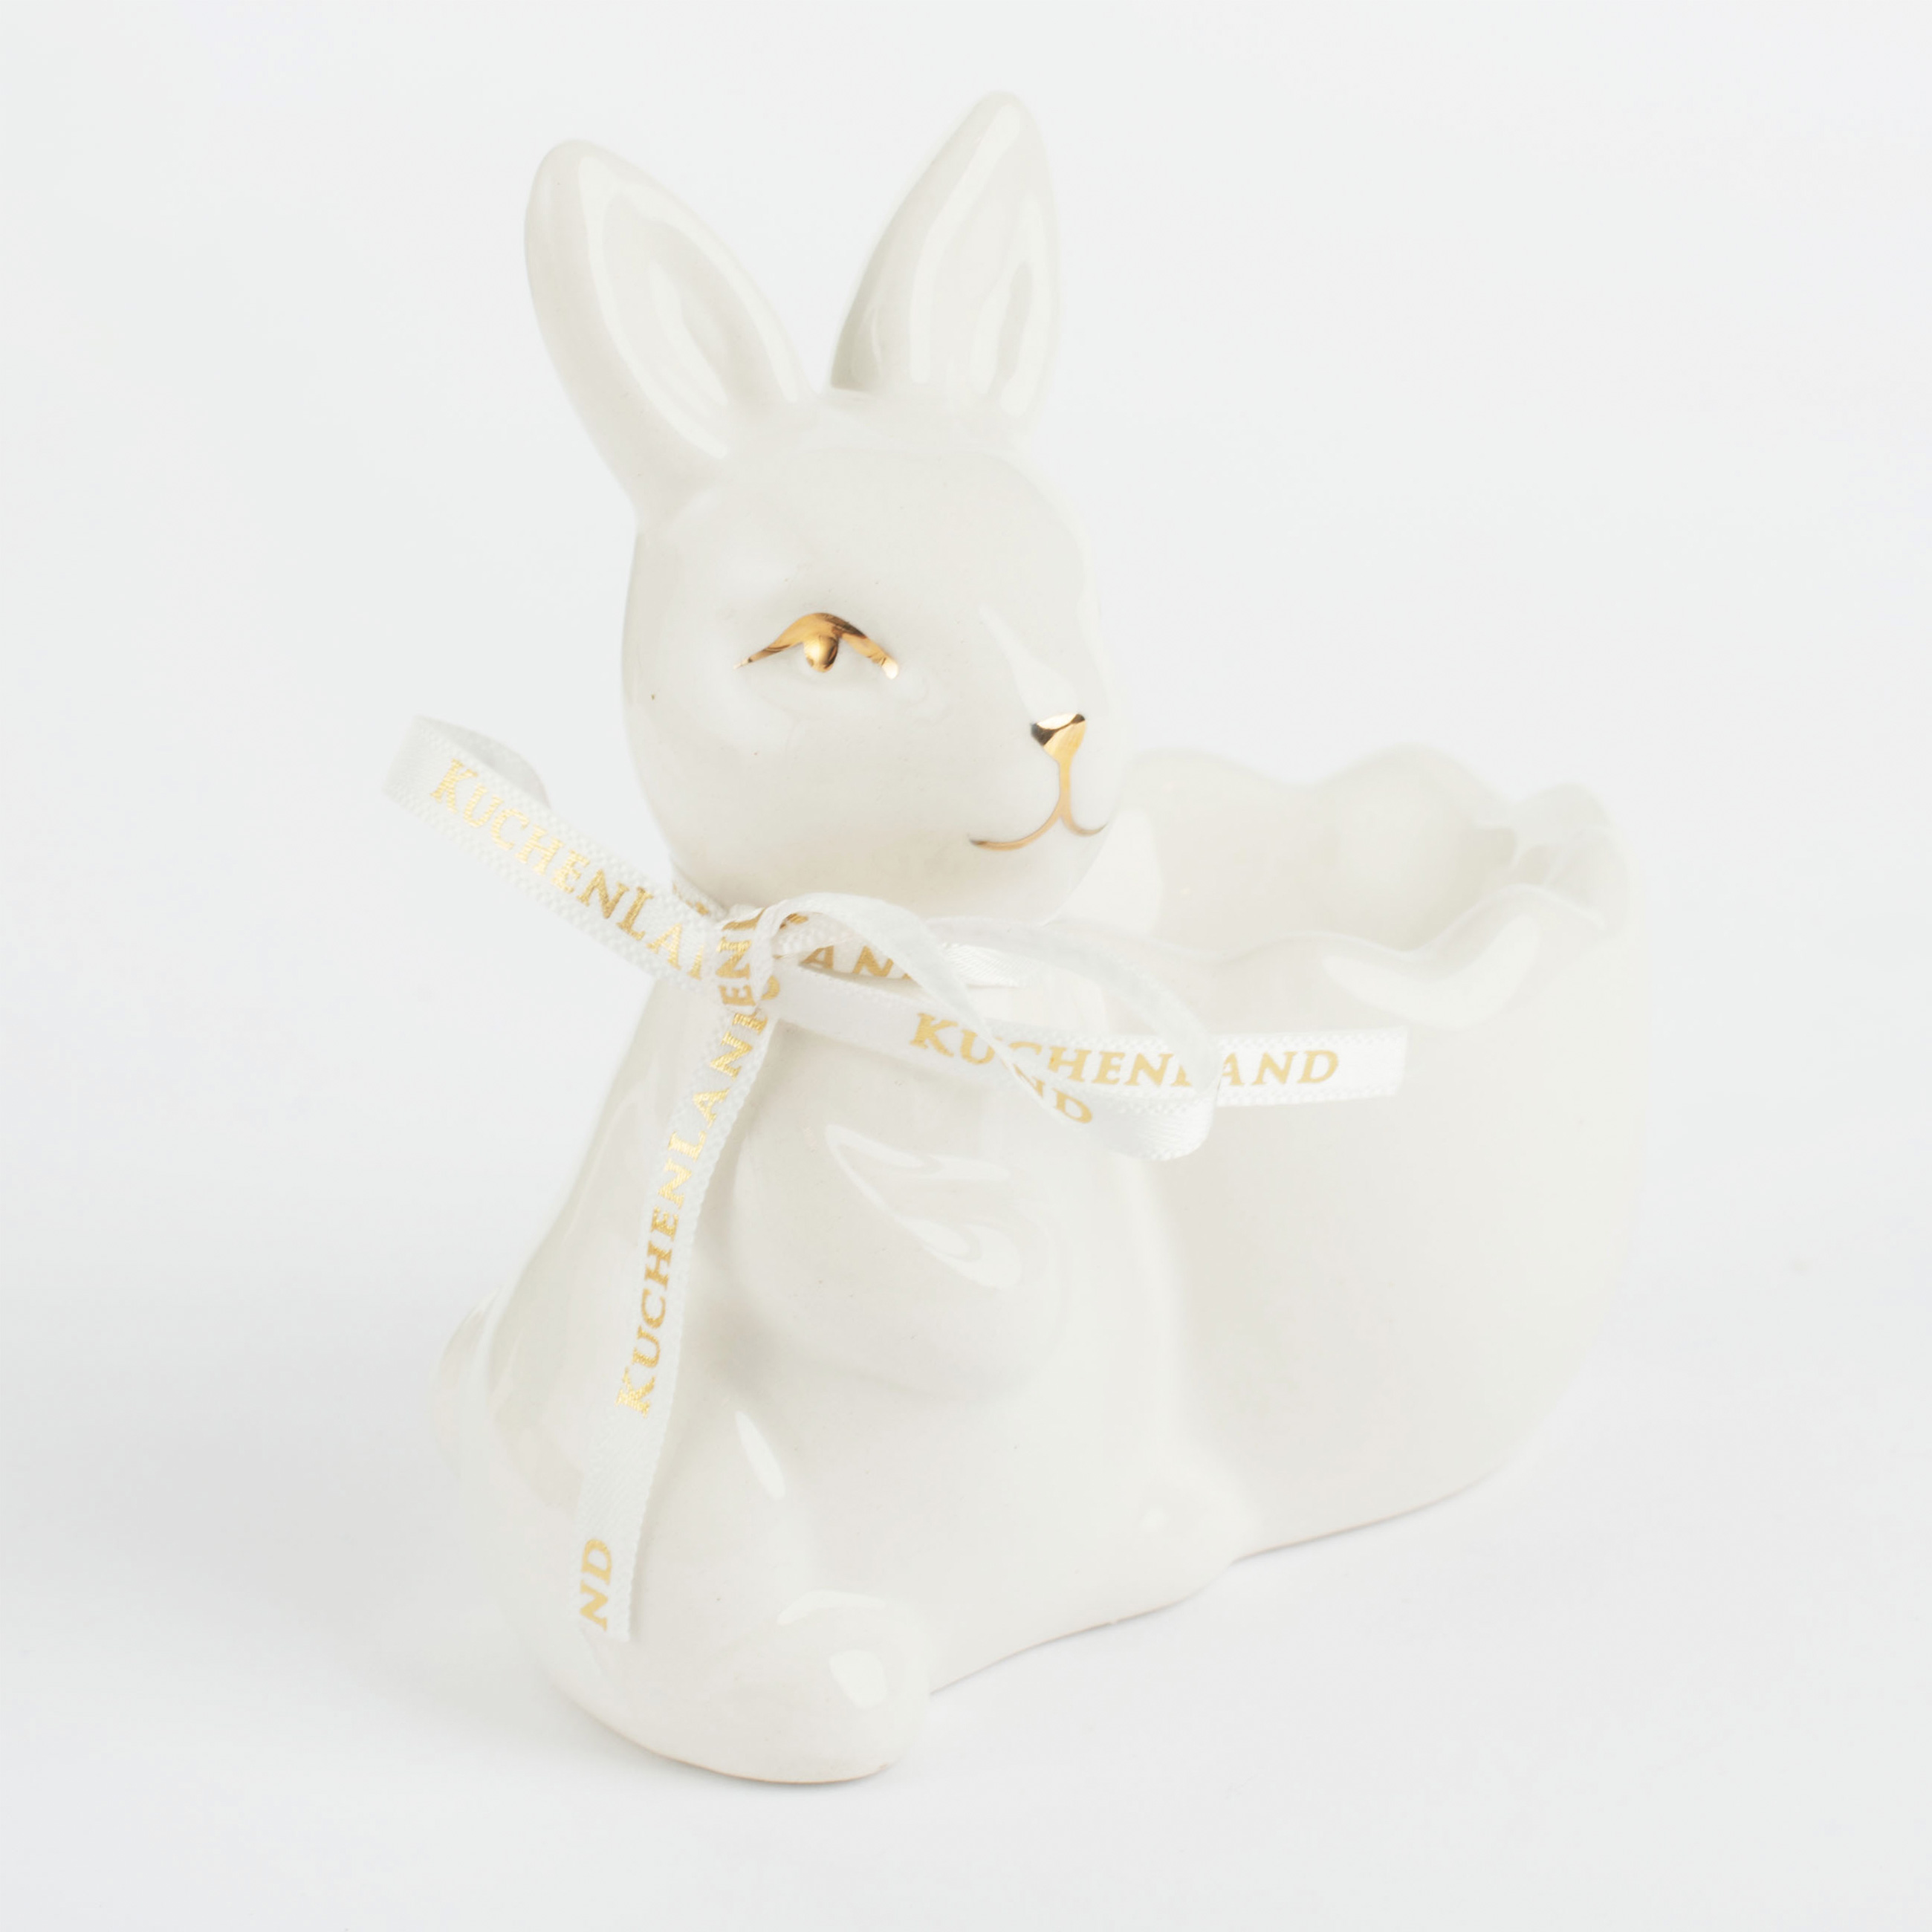 Подставка для яйца, 10 см, керамика, бело-золотистая, Кролик со скорлупкой, Easter gold изображение № 3